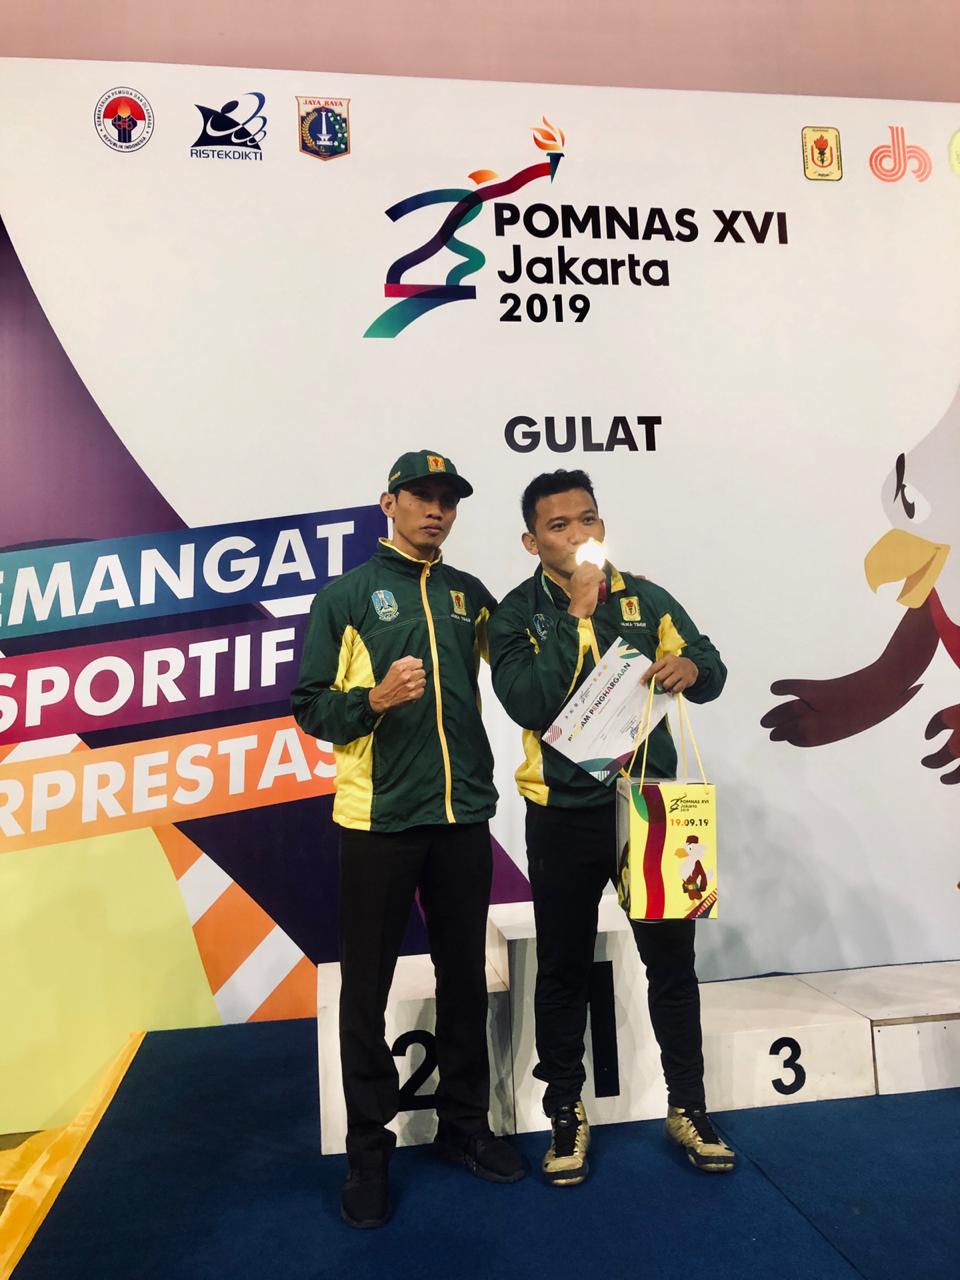 Atlet UM Kalungi Medali Emas di POMNAS XVI 2019